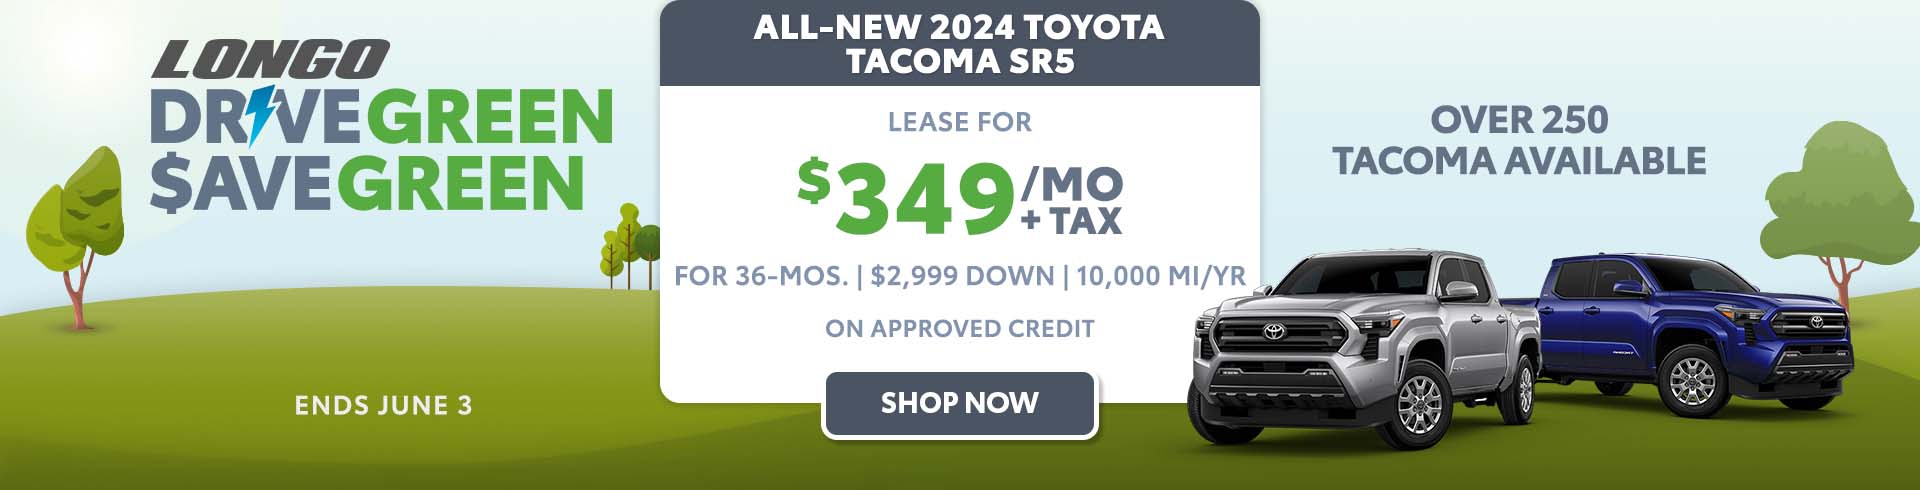 Lease a new 2024 Toyota Tacoma